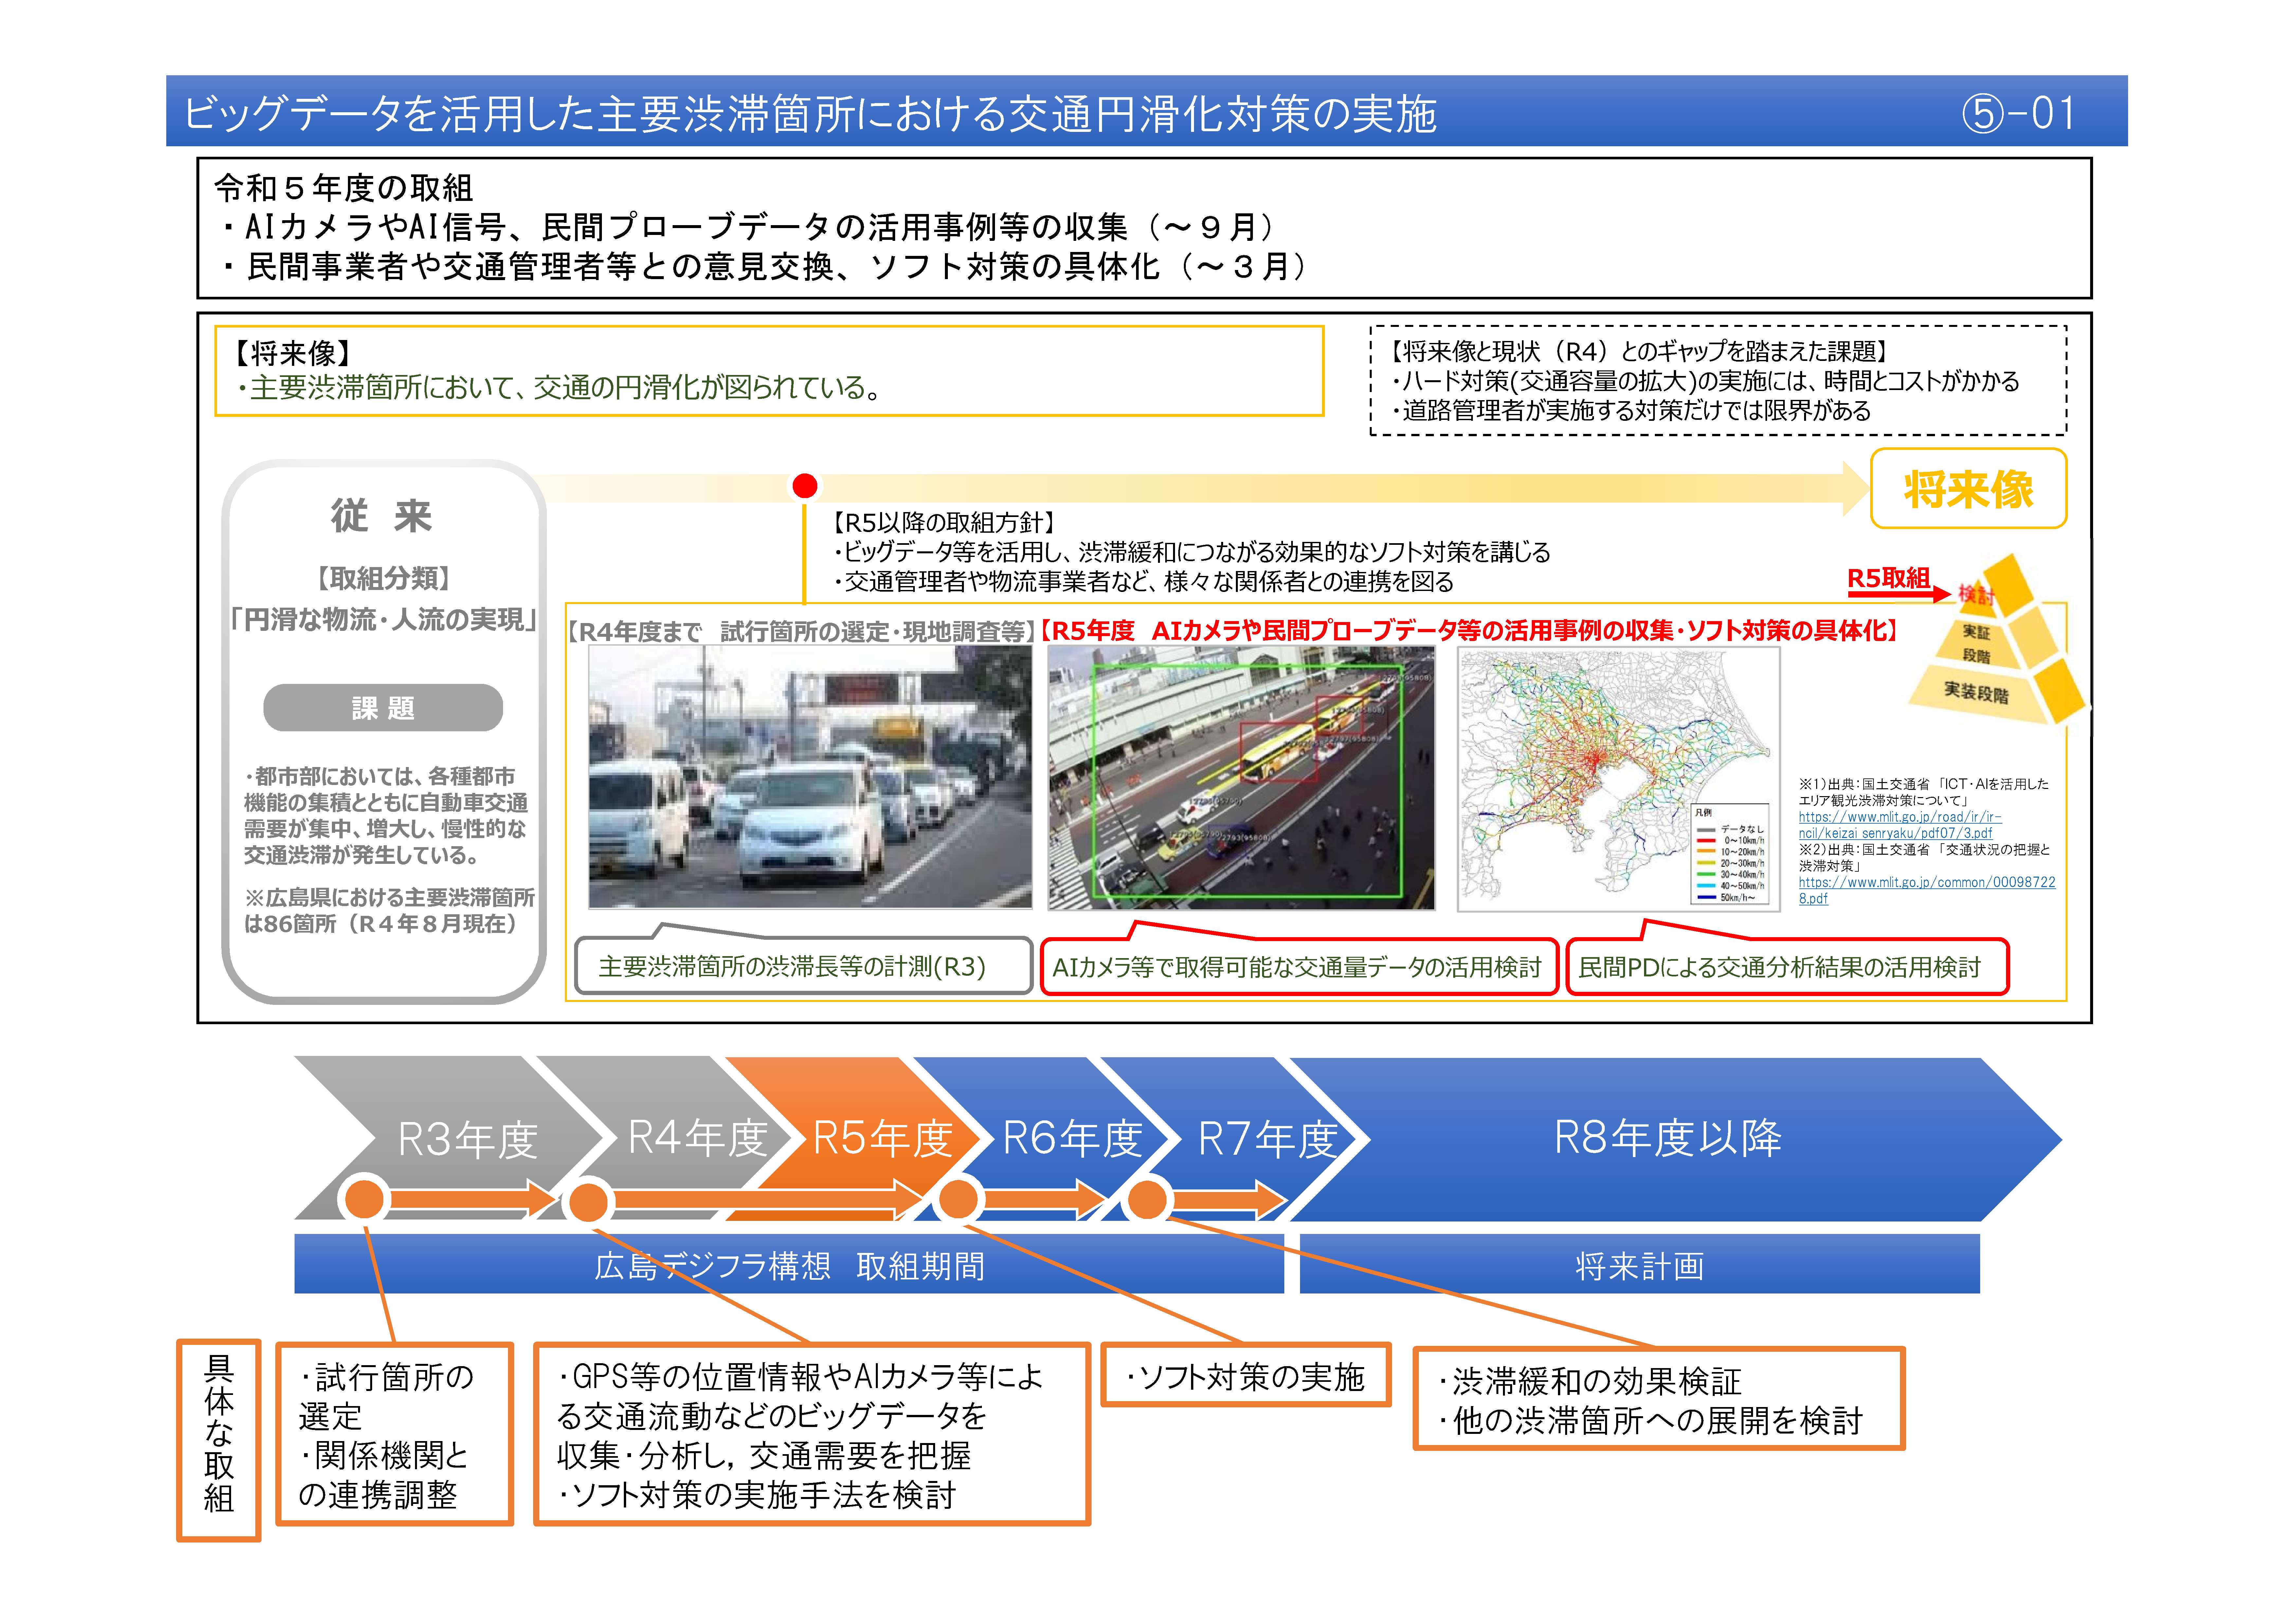 【(5)-1】ビッグデータを活用した主要渋滞箇所における交通円滑化対策の実施